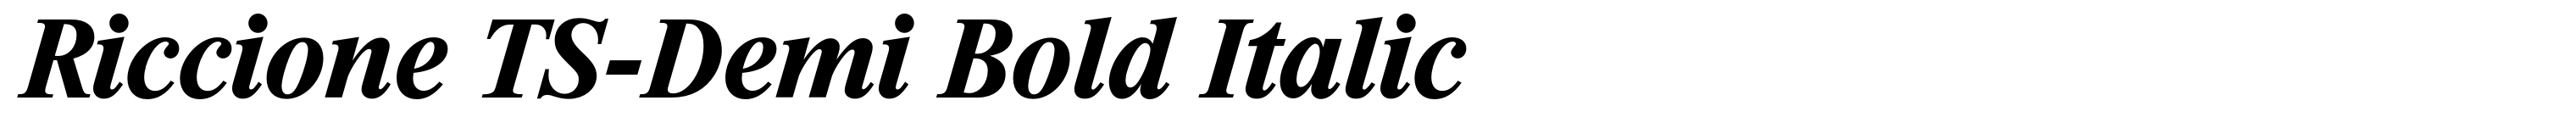 Riccione TS-Demi Bold Italic